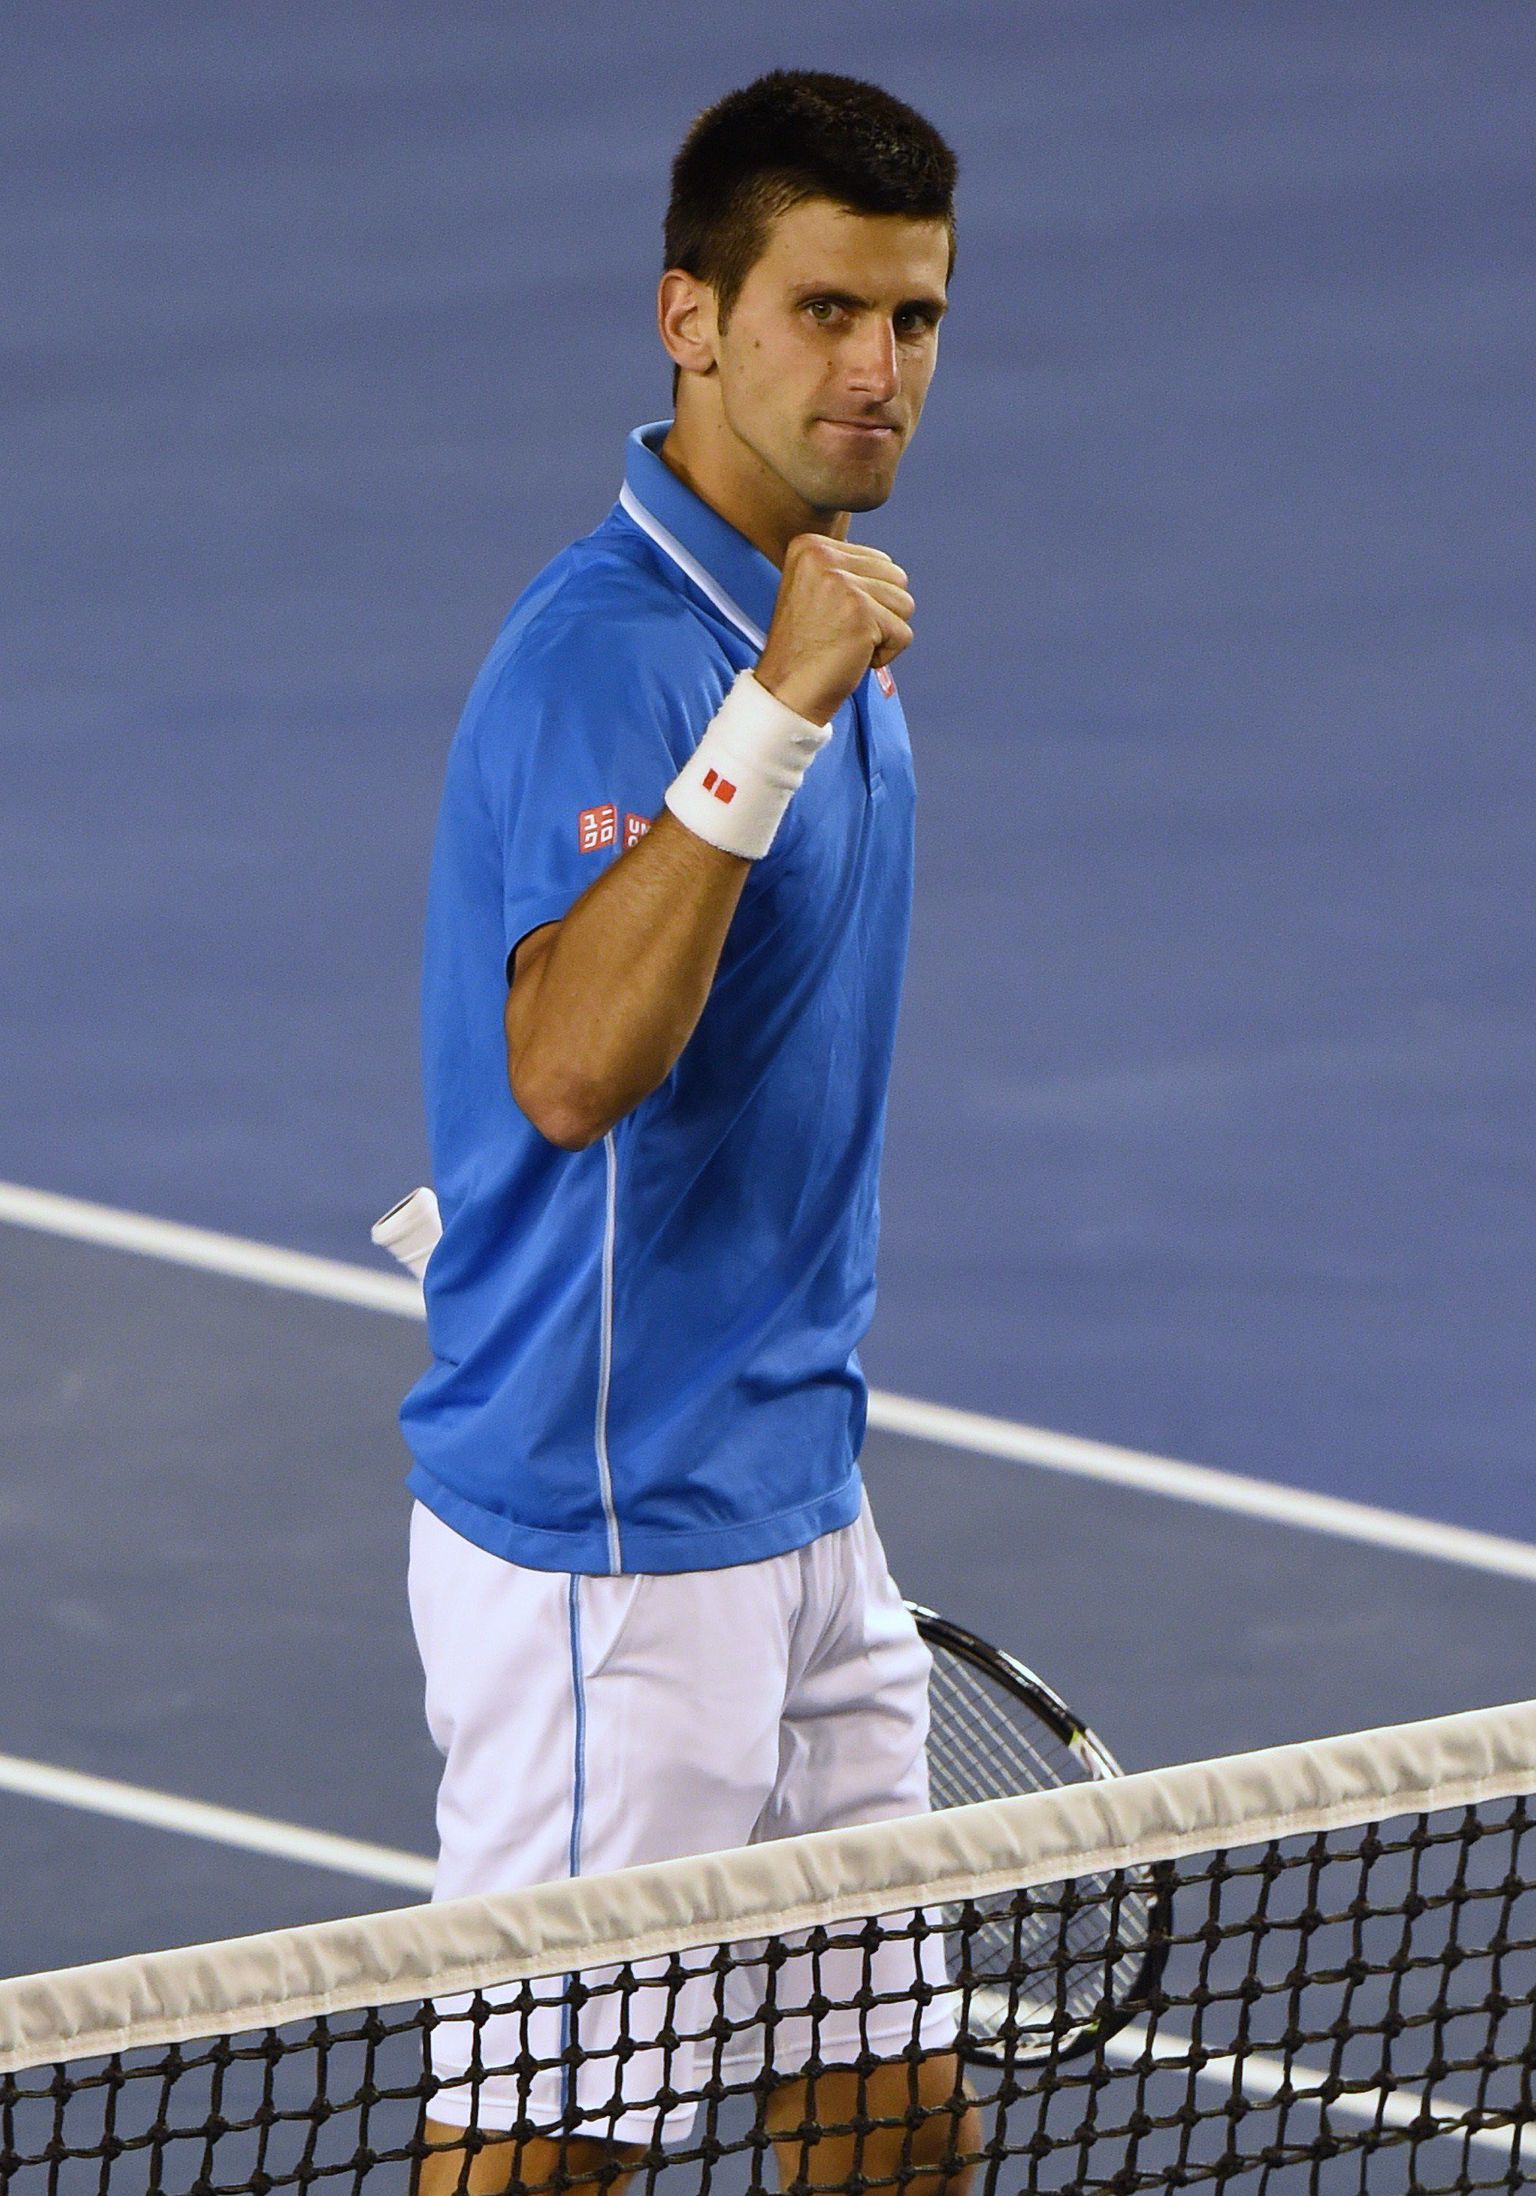 Novak Djokovic on näidanud maailma tennisetippude seas viimastel aastatel kõige stabiilsemat mängu.